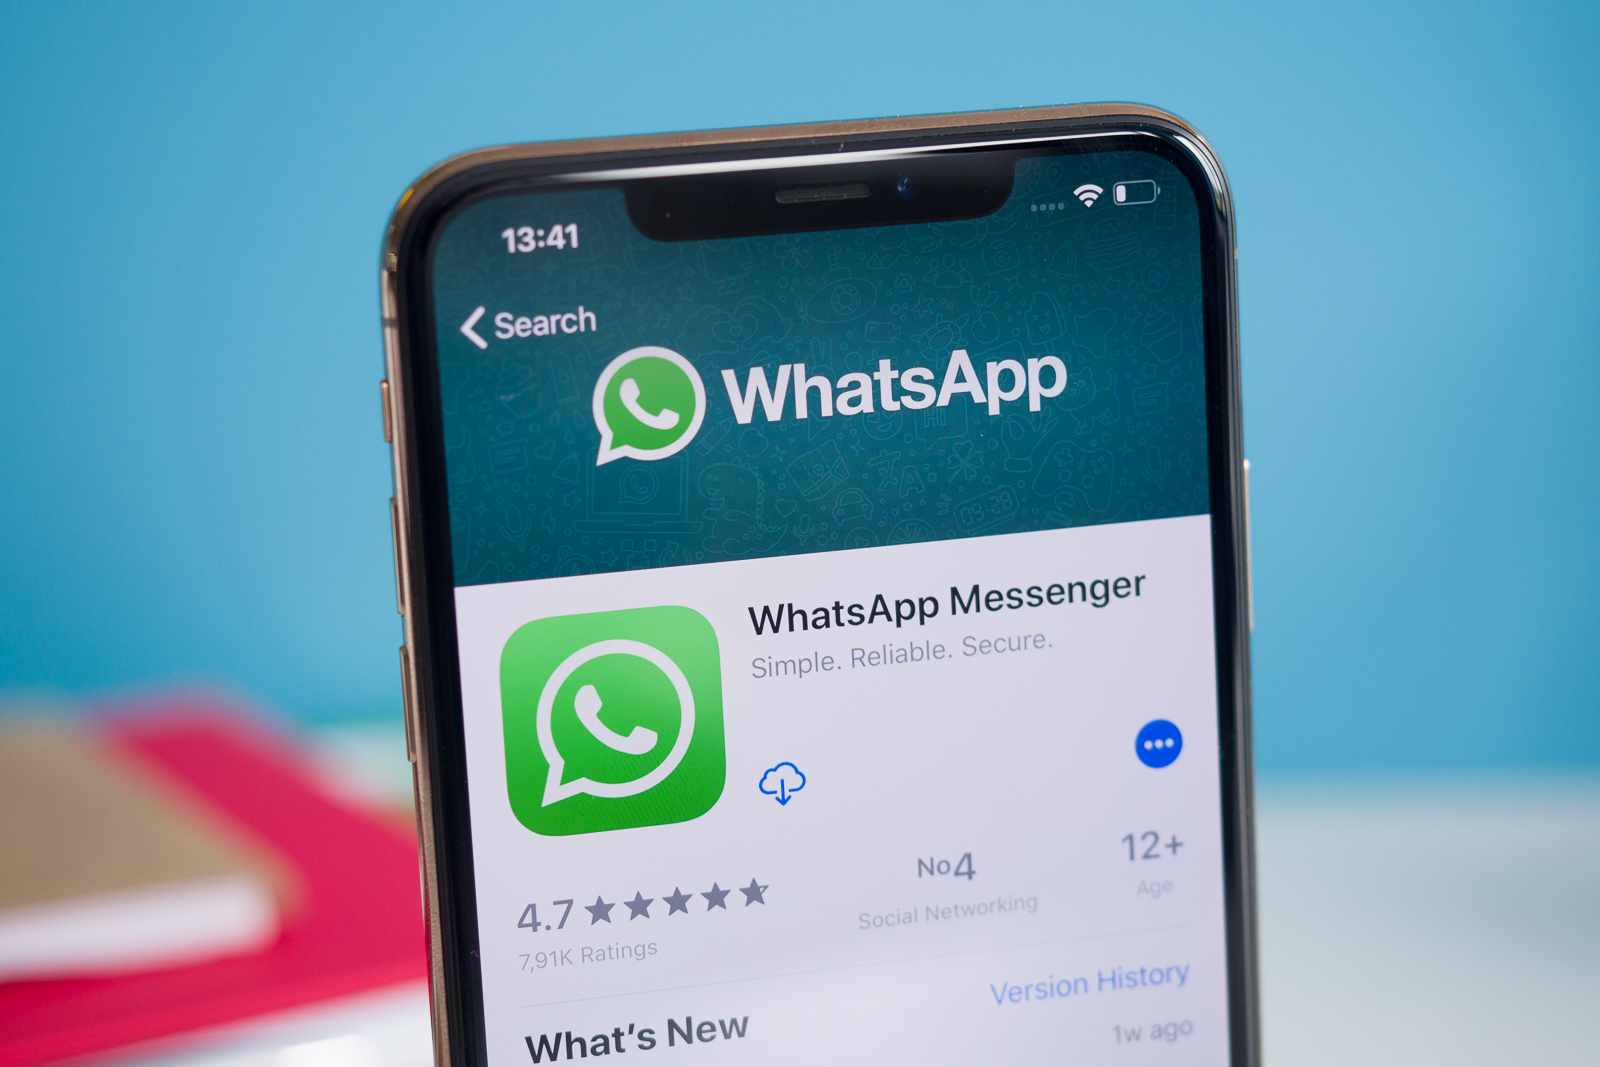 WhatsApp para iOS para facilitar o compartilhamento de imagens e links com contatos recentes